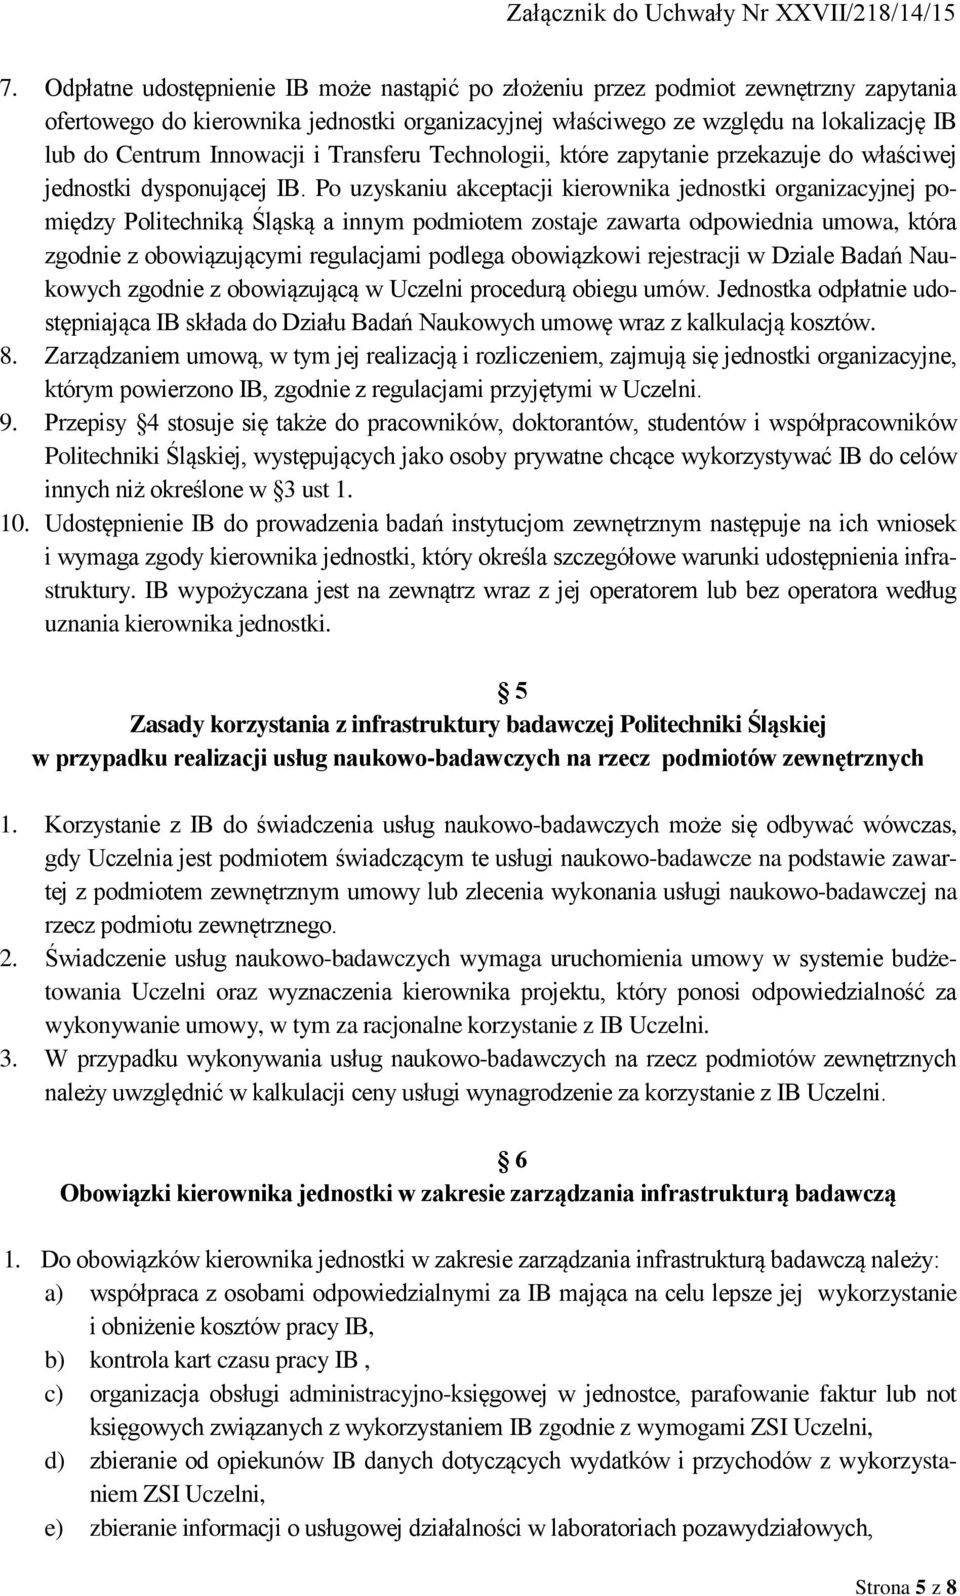 Po uzyskaniu akceptacji kierownika jednostki organizacyjnej pomiędzy Politechniką Śląską a innym podmiotem zostaje zawarta odpowiednia umowa, która zgodnie z obowiązującymi regulacjami podlega